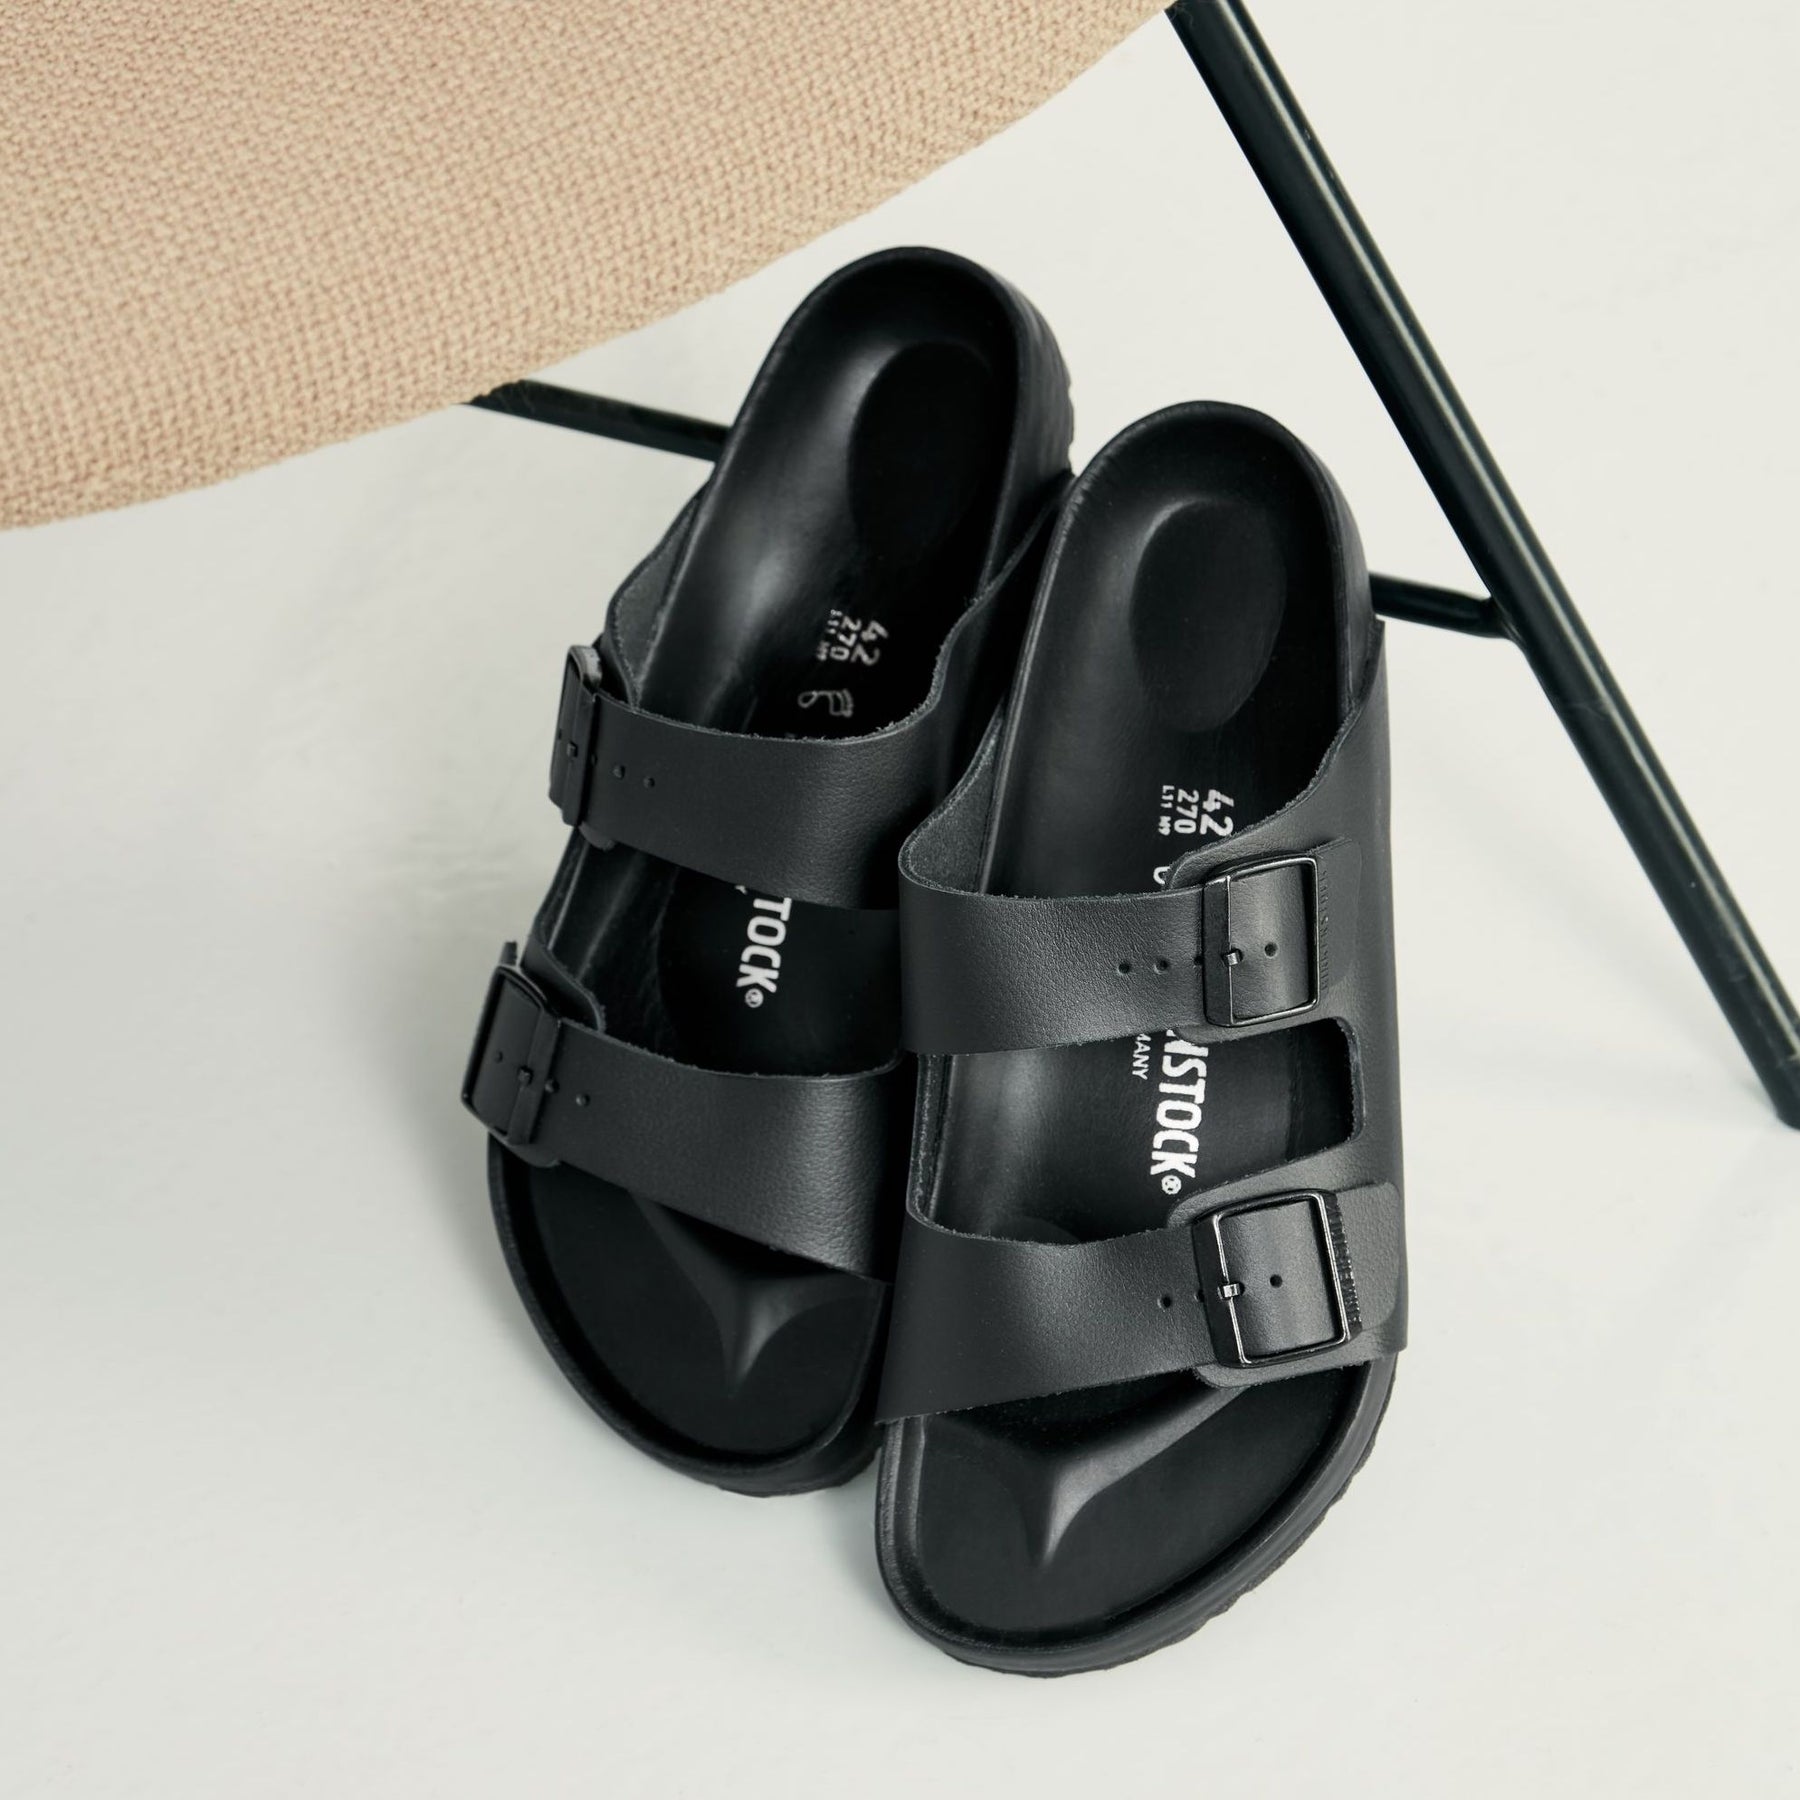 Birkenstock Arizona Black Leather Strap Sandals Size 42 (L11,M9) Slides www.melpoejo.com.br